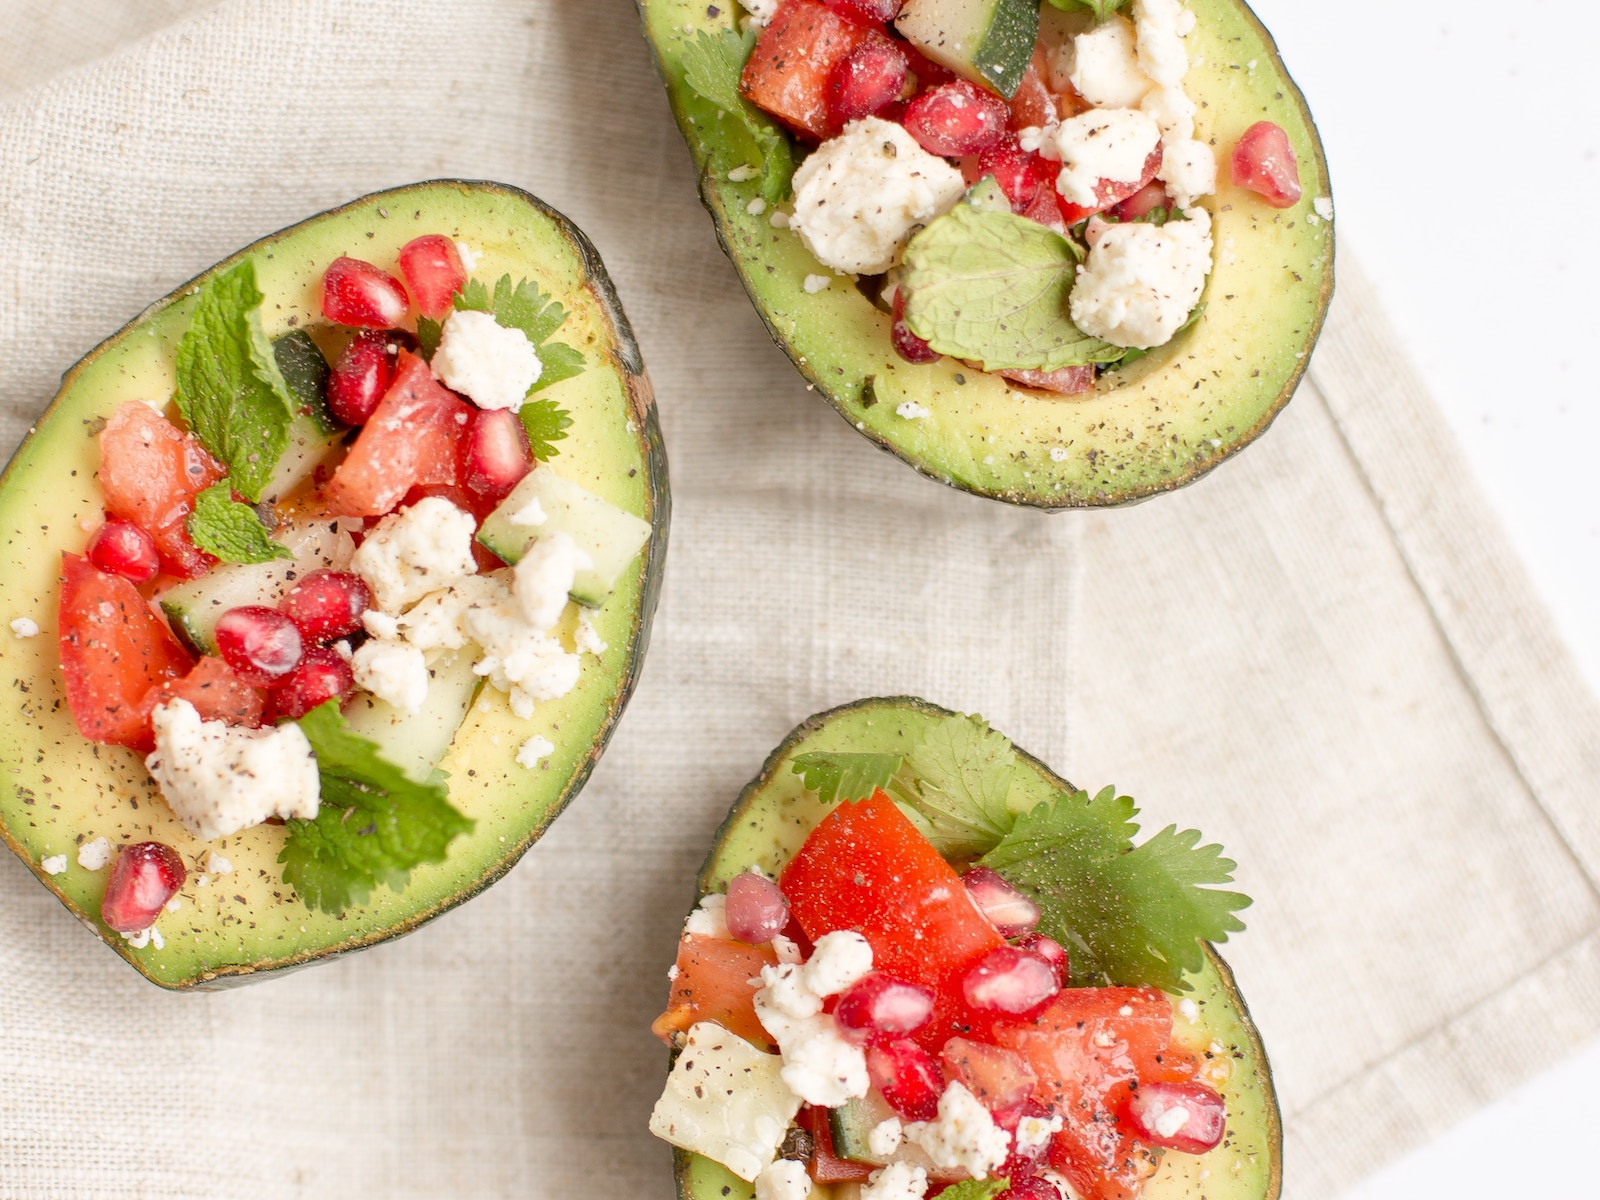 Savoury avocado salad bowls